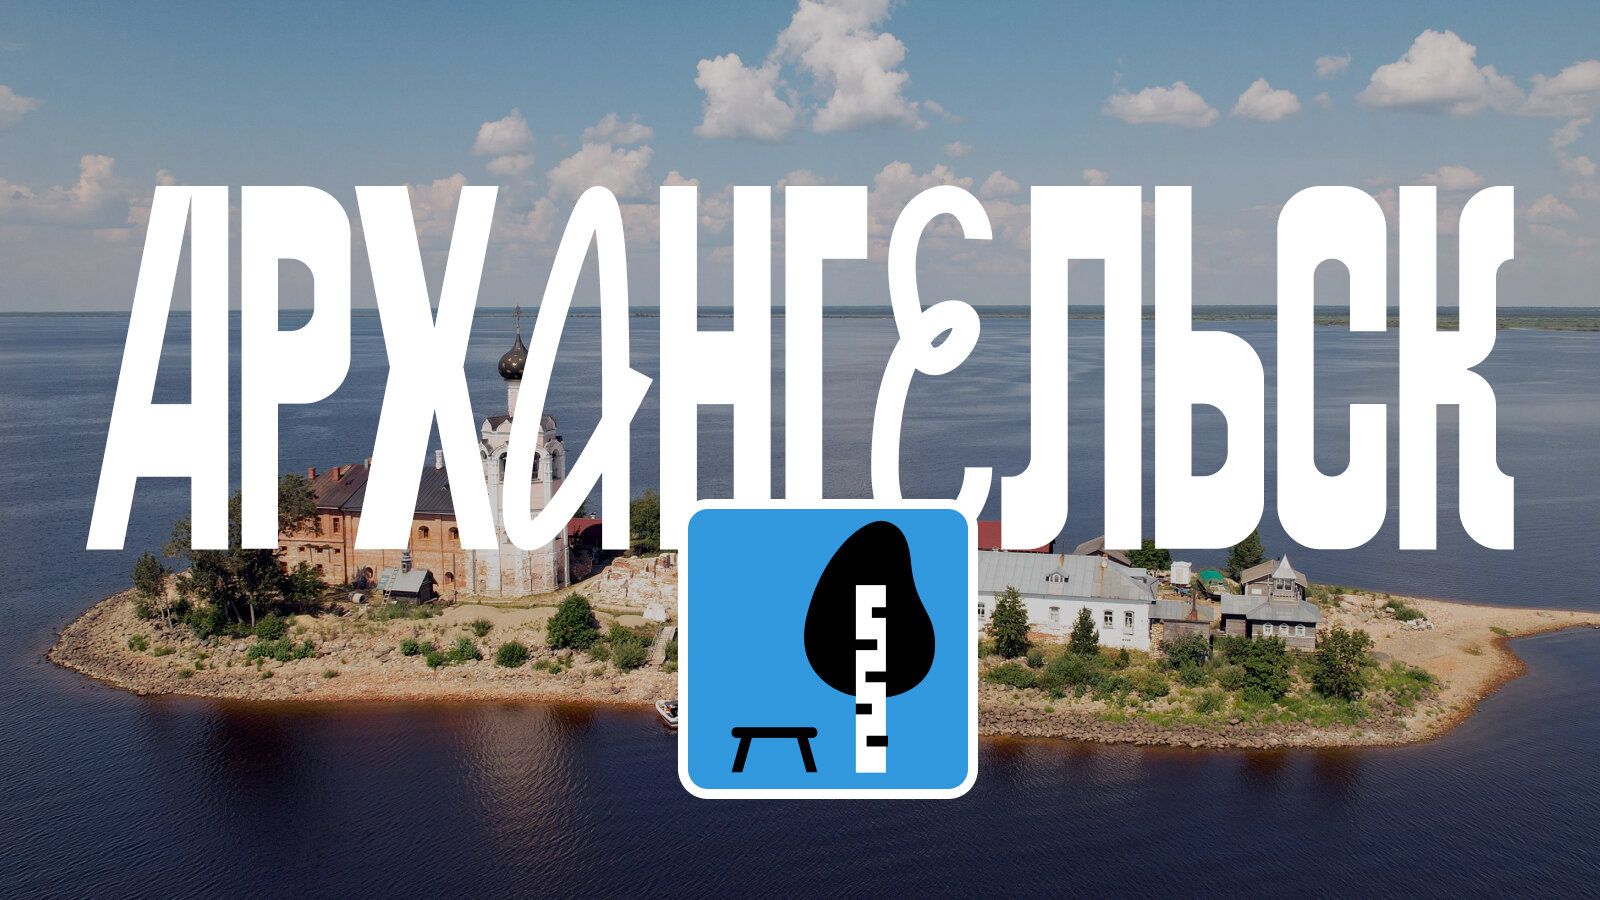 Шары, остров, викинги: что посмотреть по пути в Архангельск